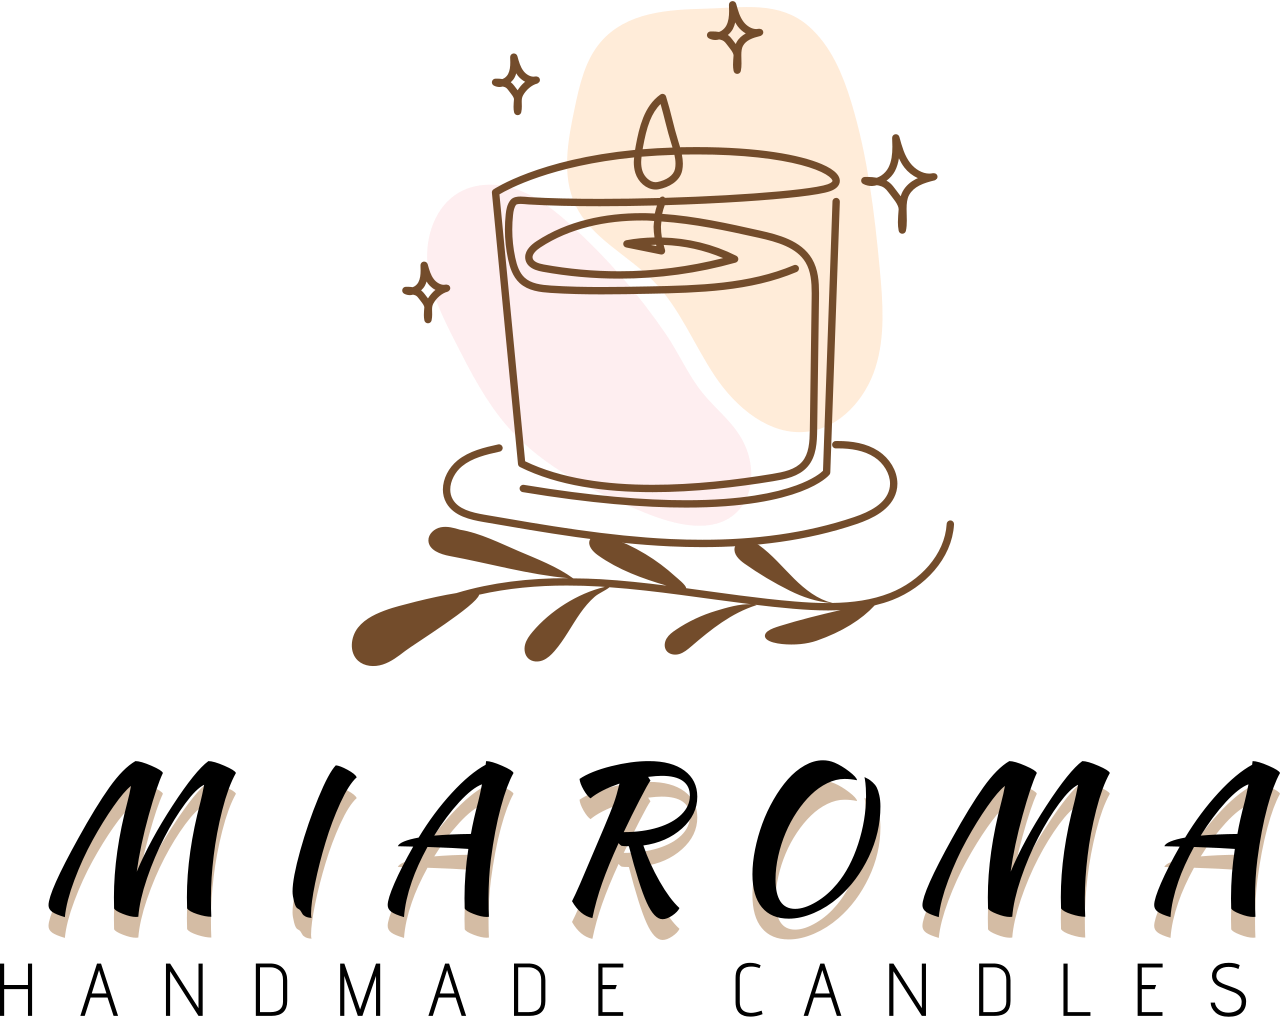 Miaroma's logo